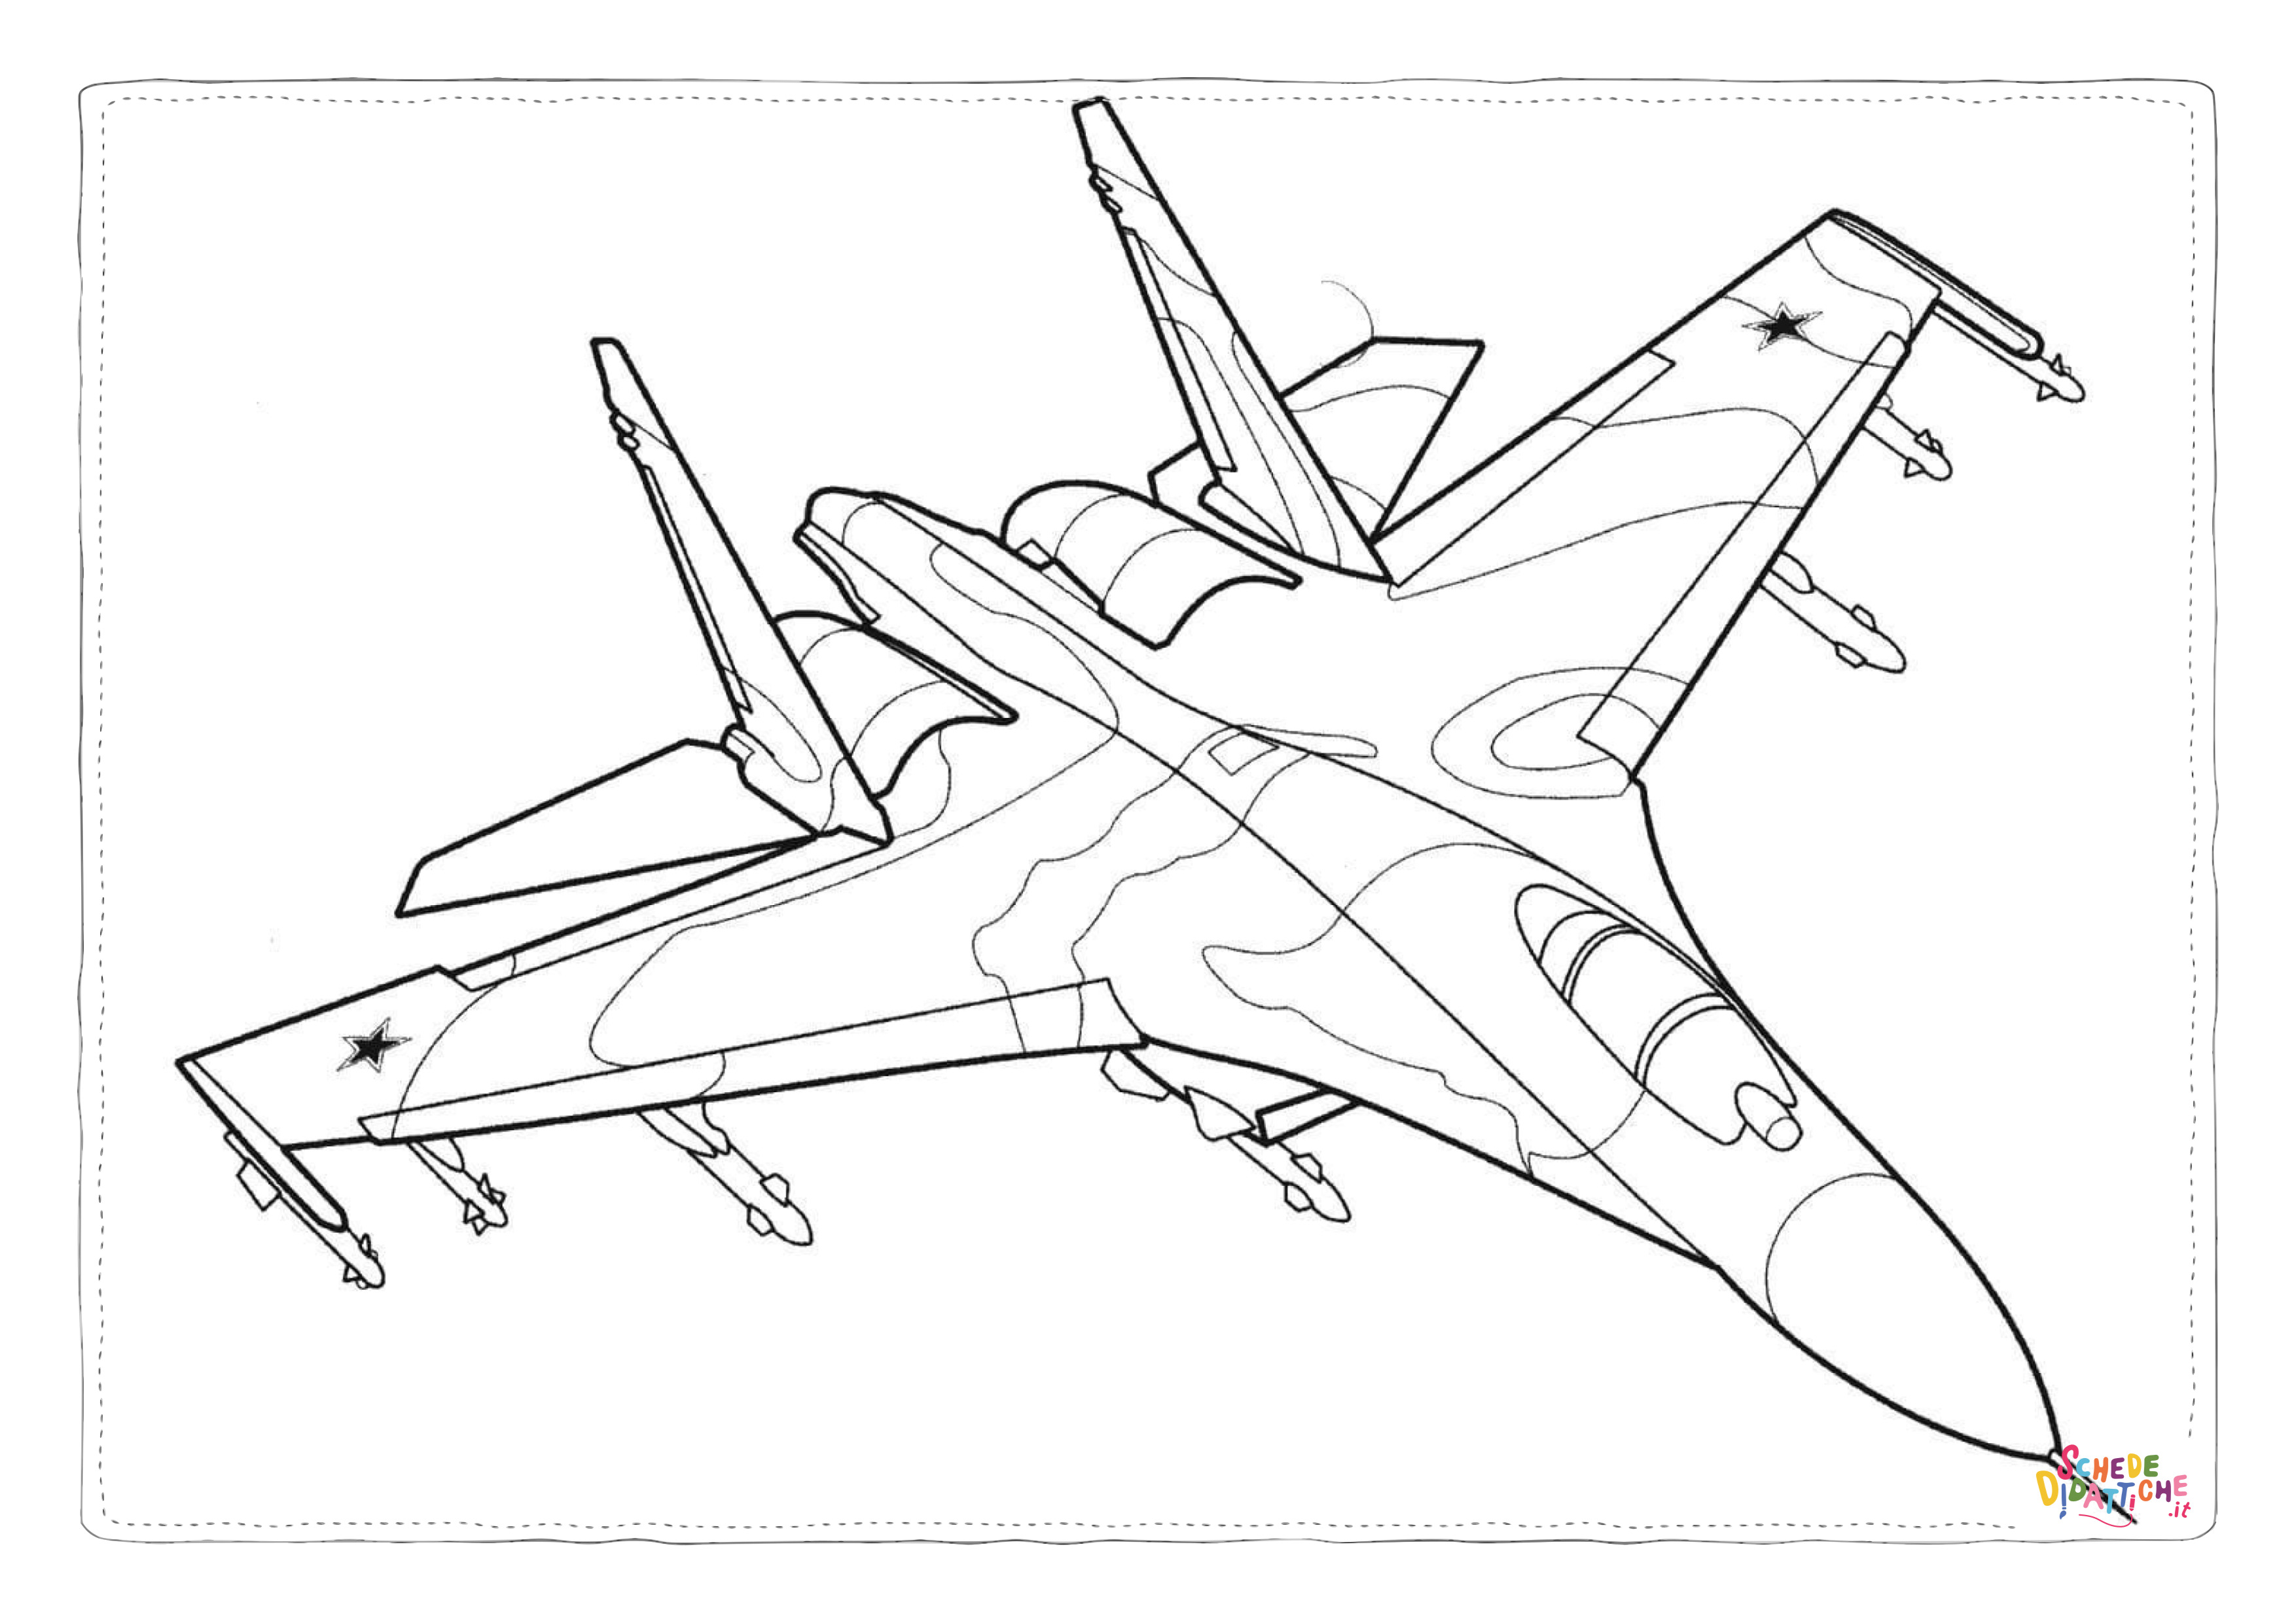 Disegno di aereo militare da stampare e colorare 100